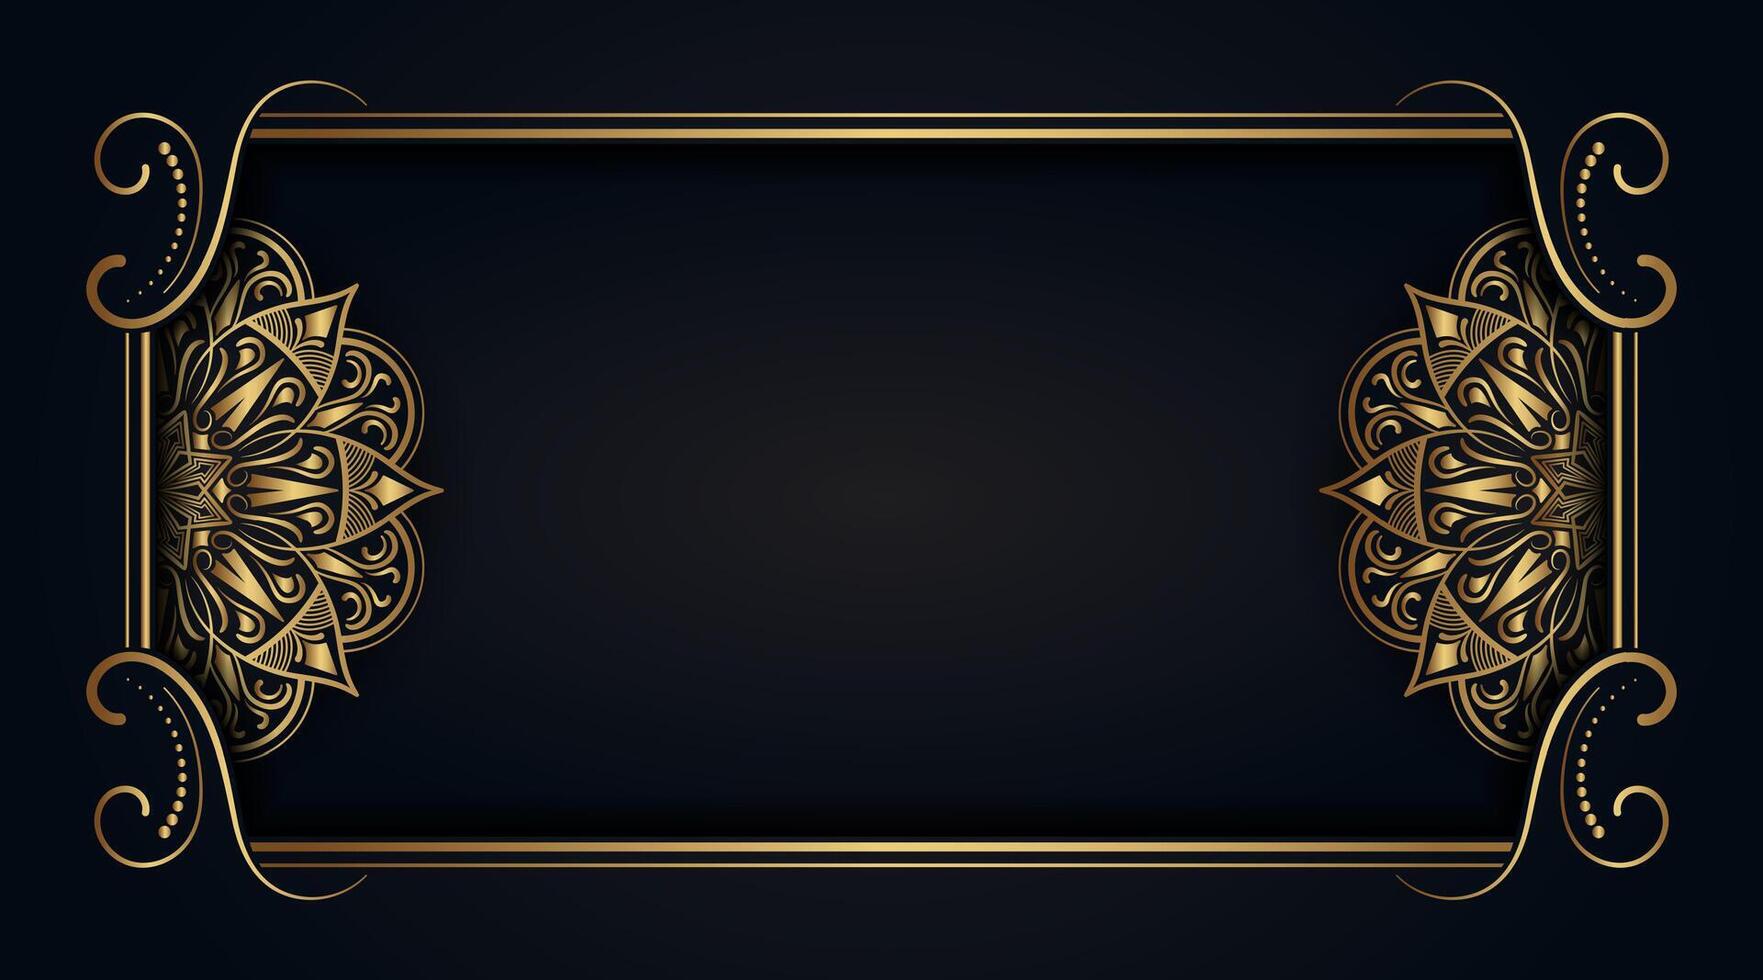 negro lujo antecedentes con oro mandala adornos vector